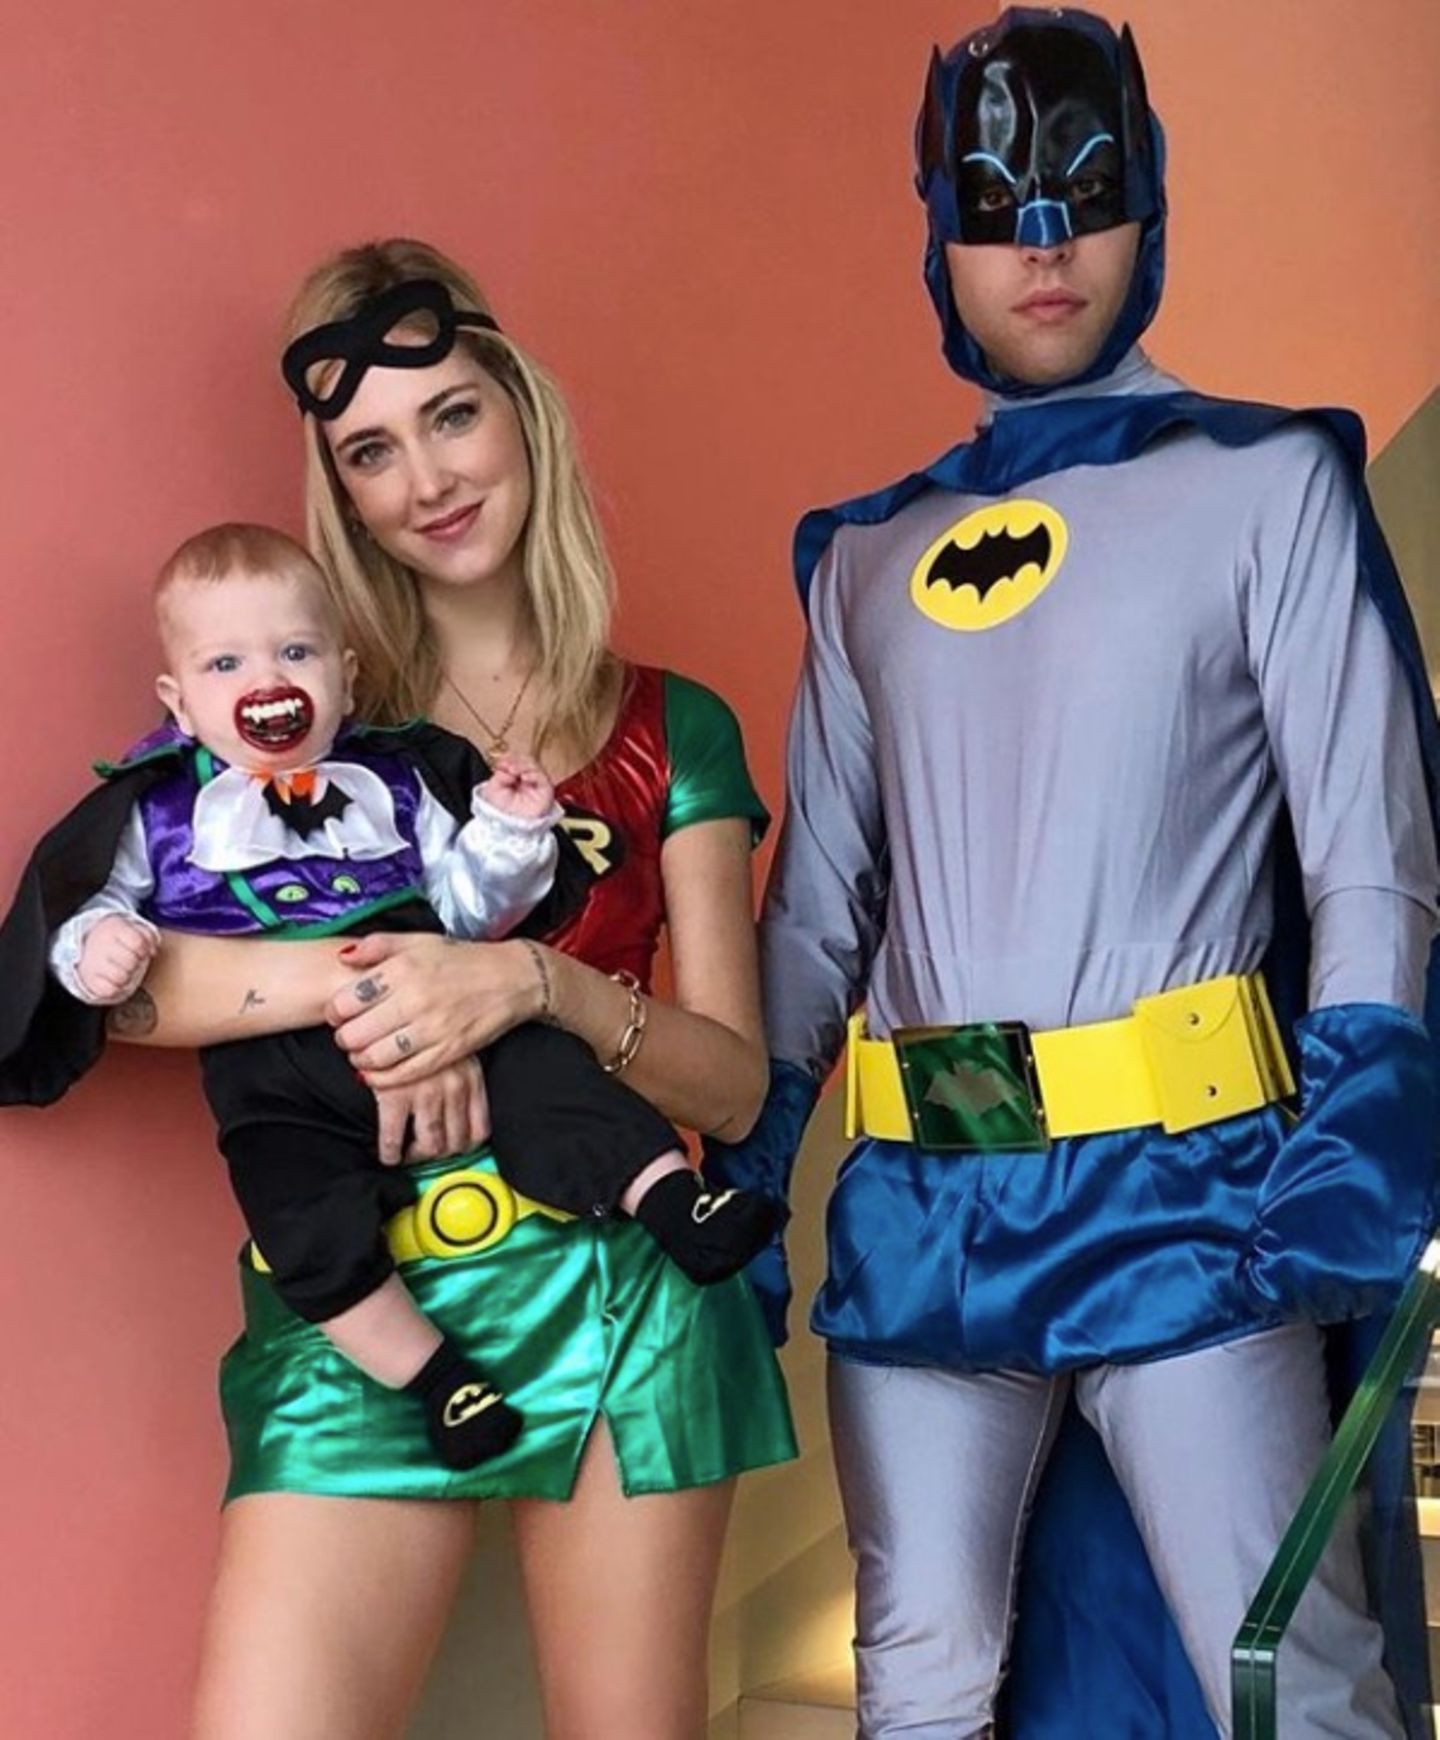 Ihre Kostüme sind der Hit: Modebloggerin Chiara Ferragni als Robin, Ehemann Fedez als Batman, Sohn Leo als Joker - inklusive Vampir-Zähne-Schnuller.